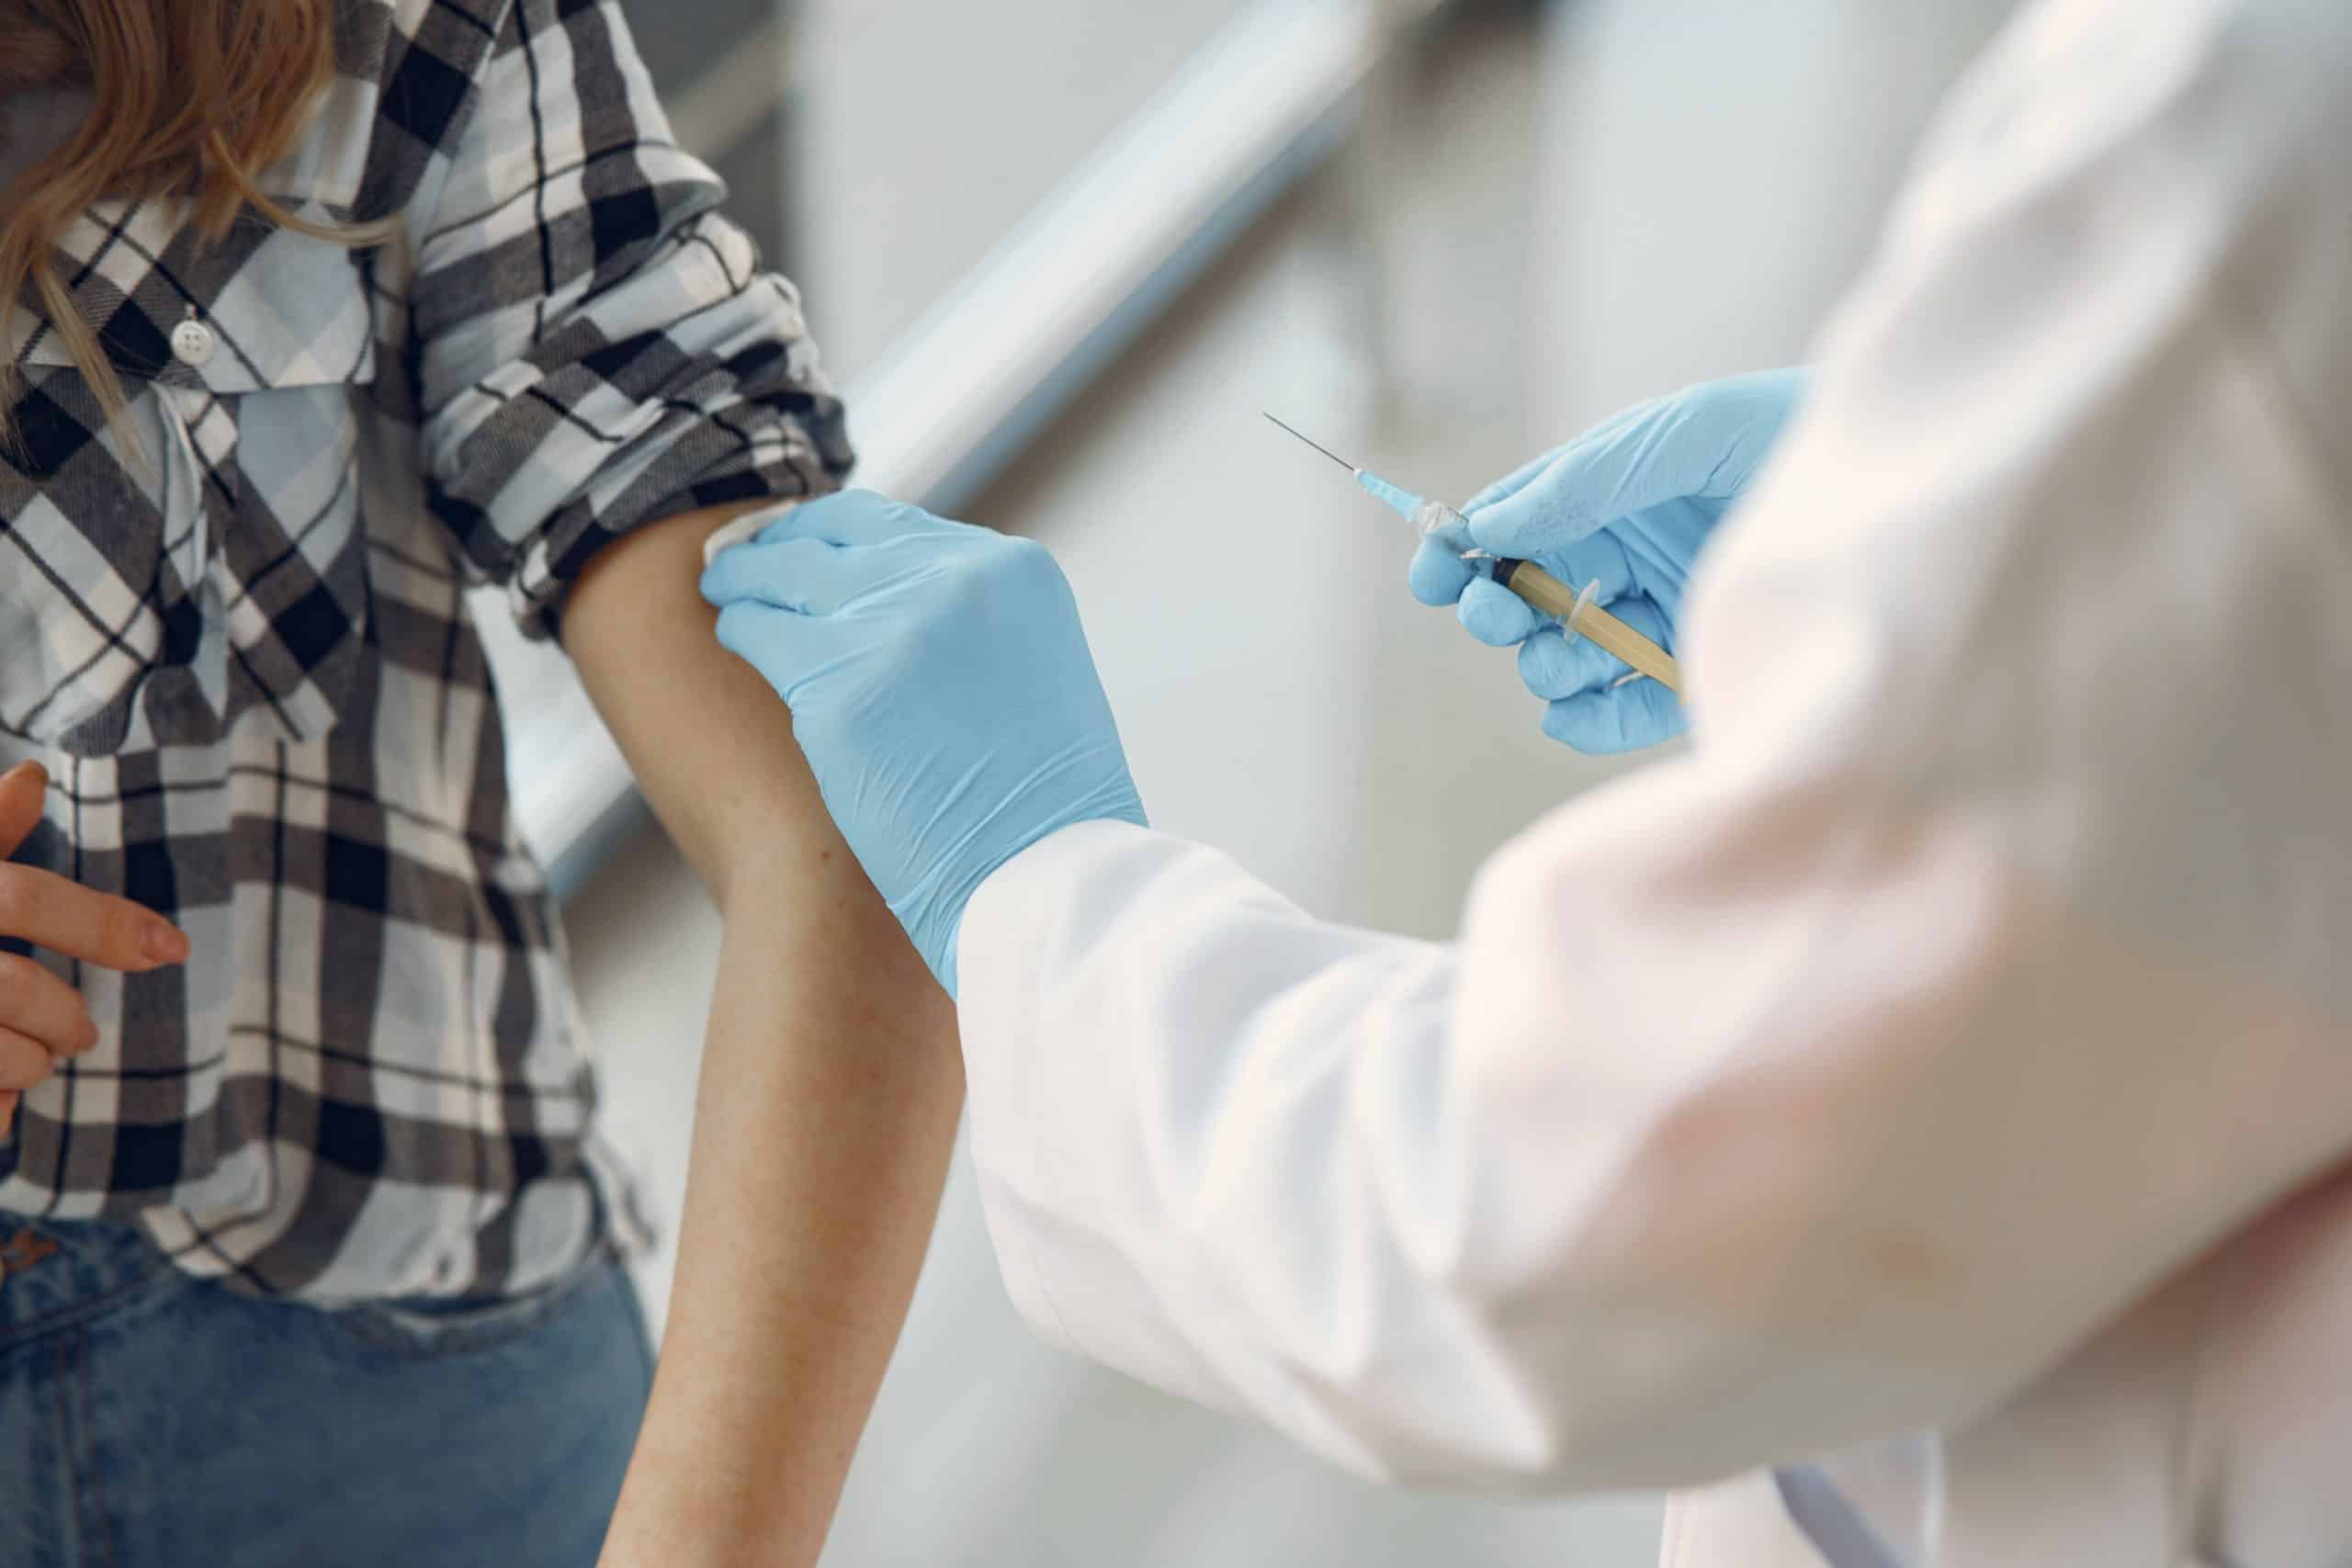 Vacunación disminuye casos de influenza y ausentismo laboral, reafirma estudio costarricense